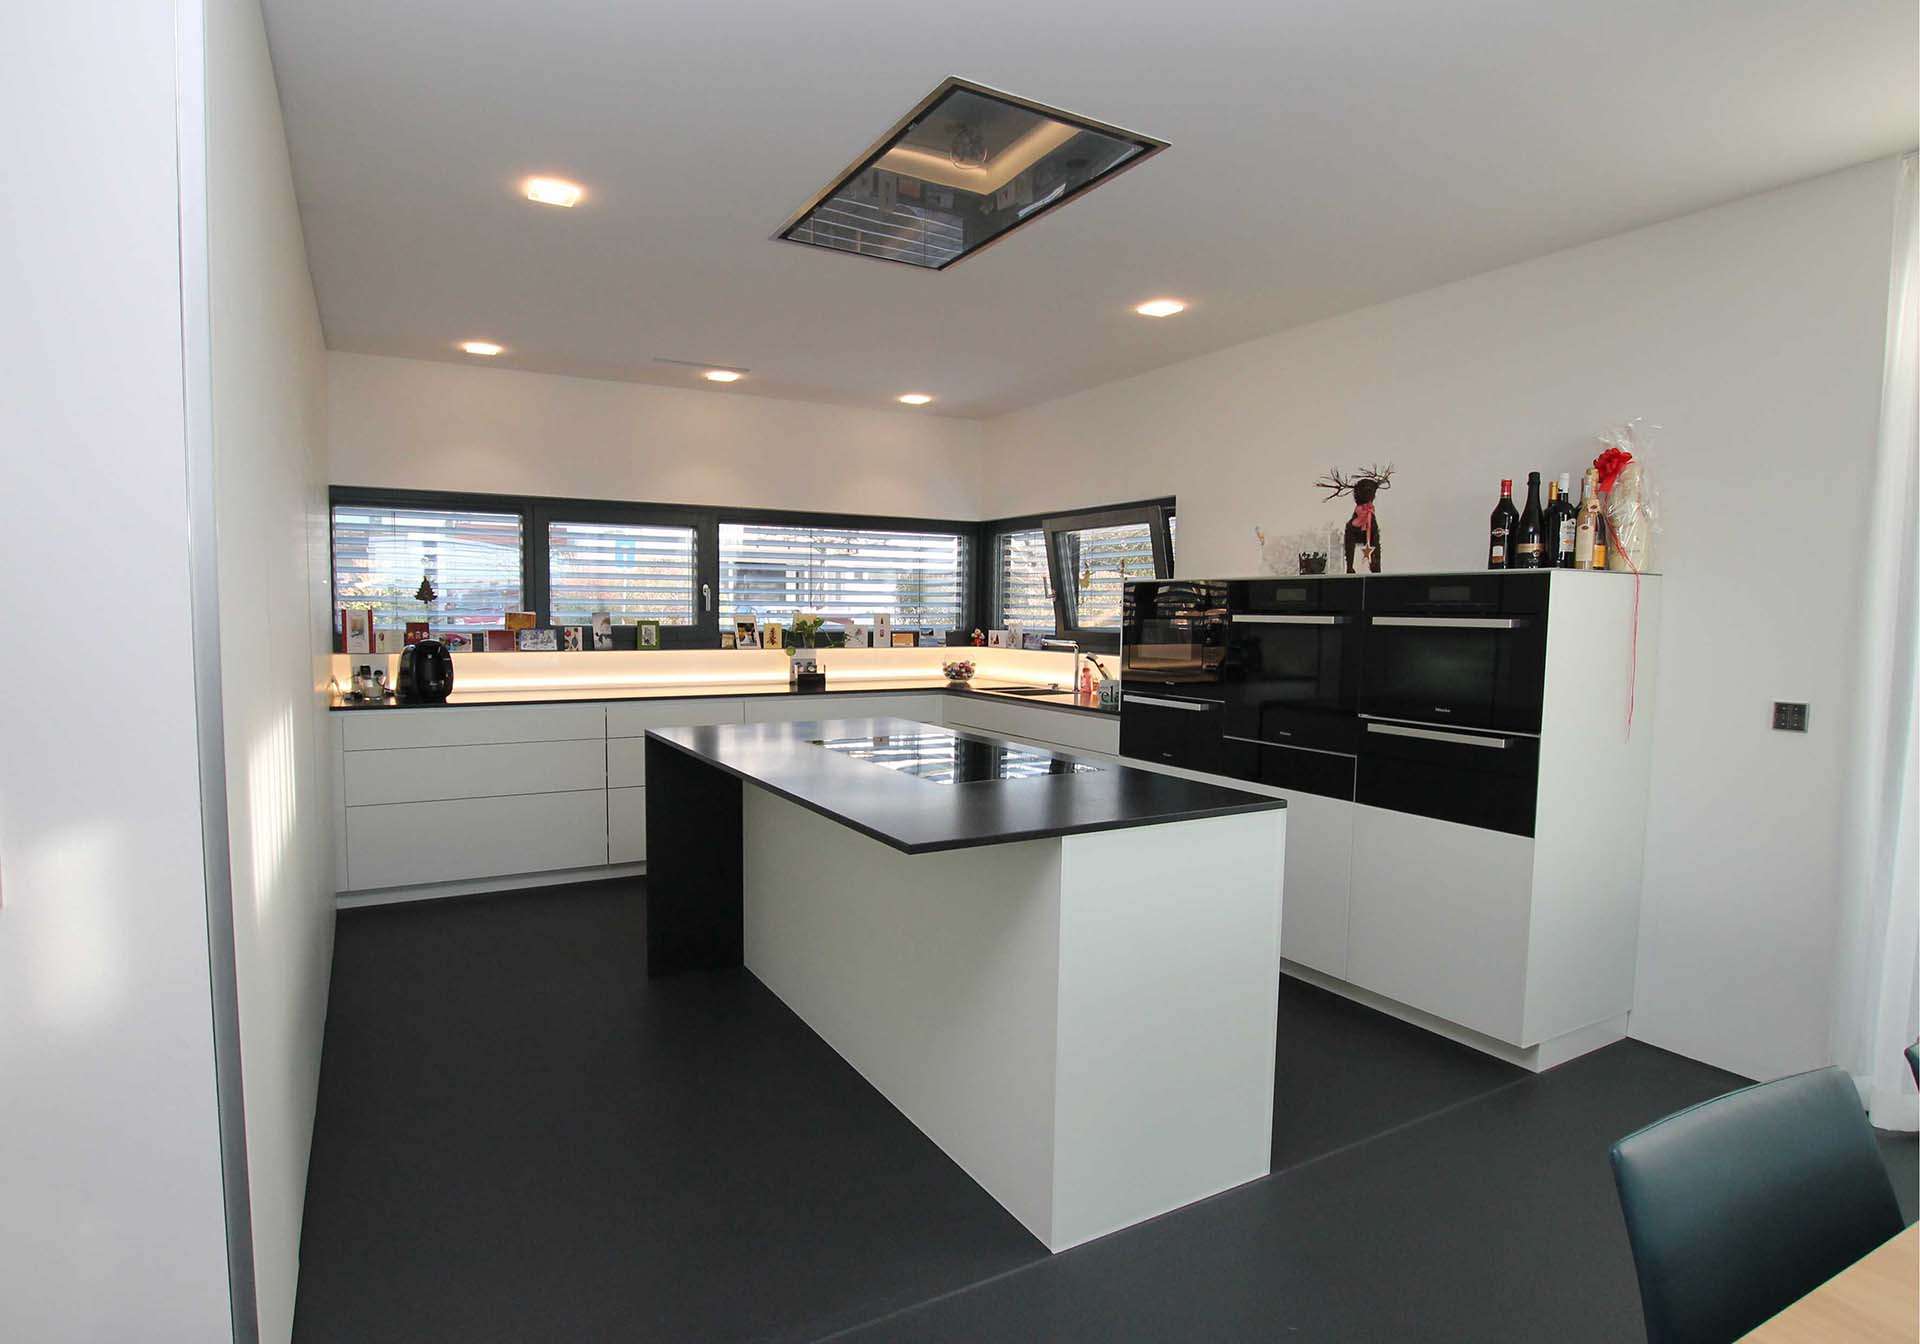 U-förmige Küche mit einer Kücheninsel in der Mitte. Arbeitsfläche aus schwarzem Granit. Die integrierten Küchengeräte alle aus einer Serie in schwarz.